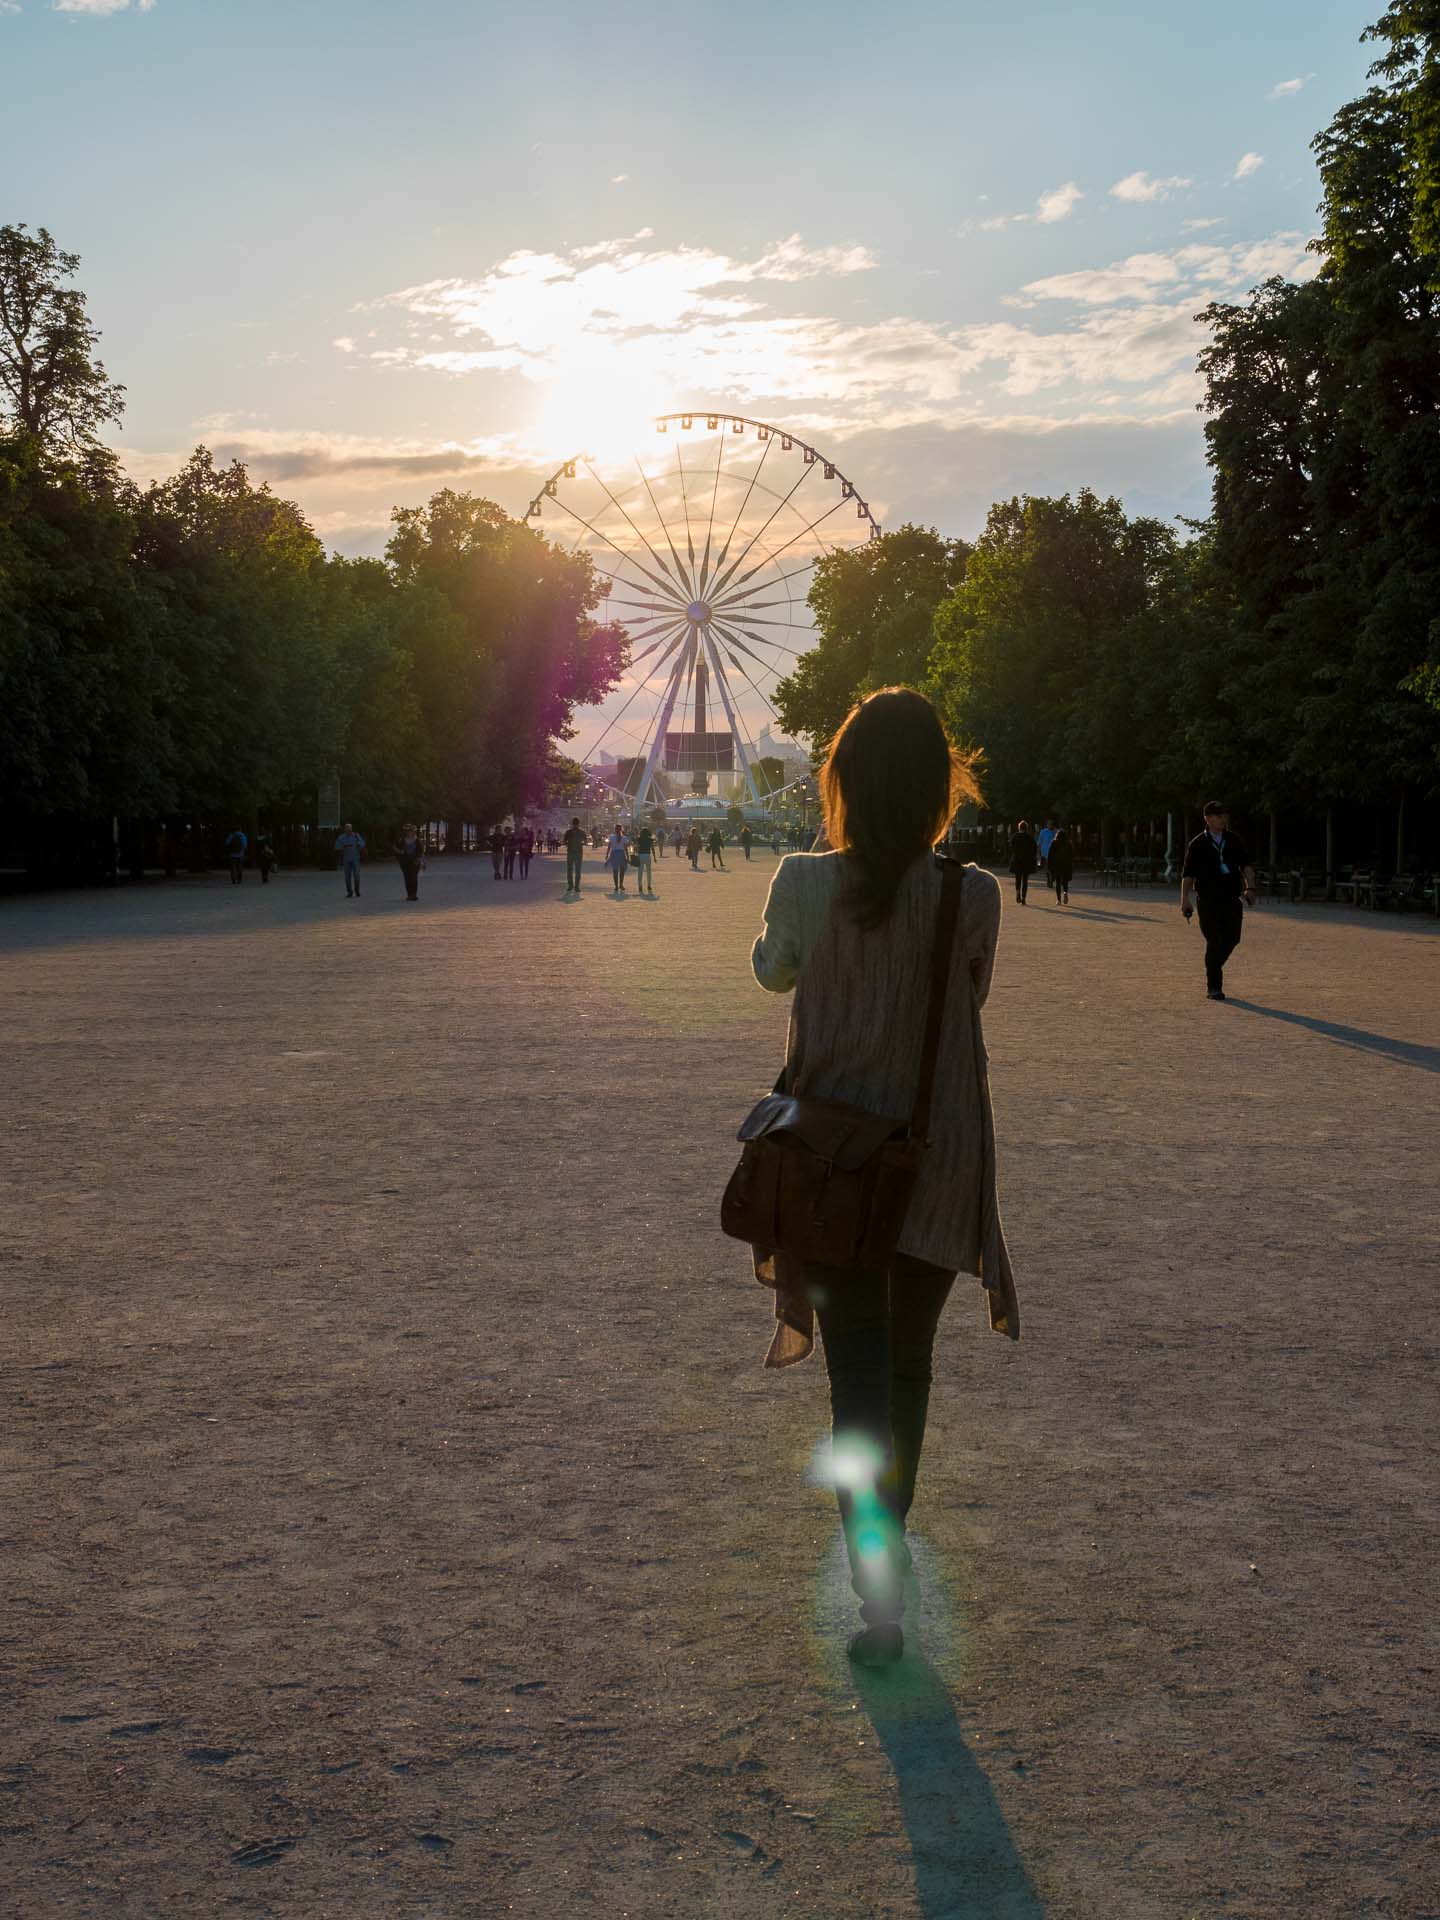 Paris Reisetipp: Jardin des Tuleries Riesenrad